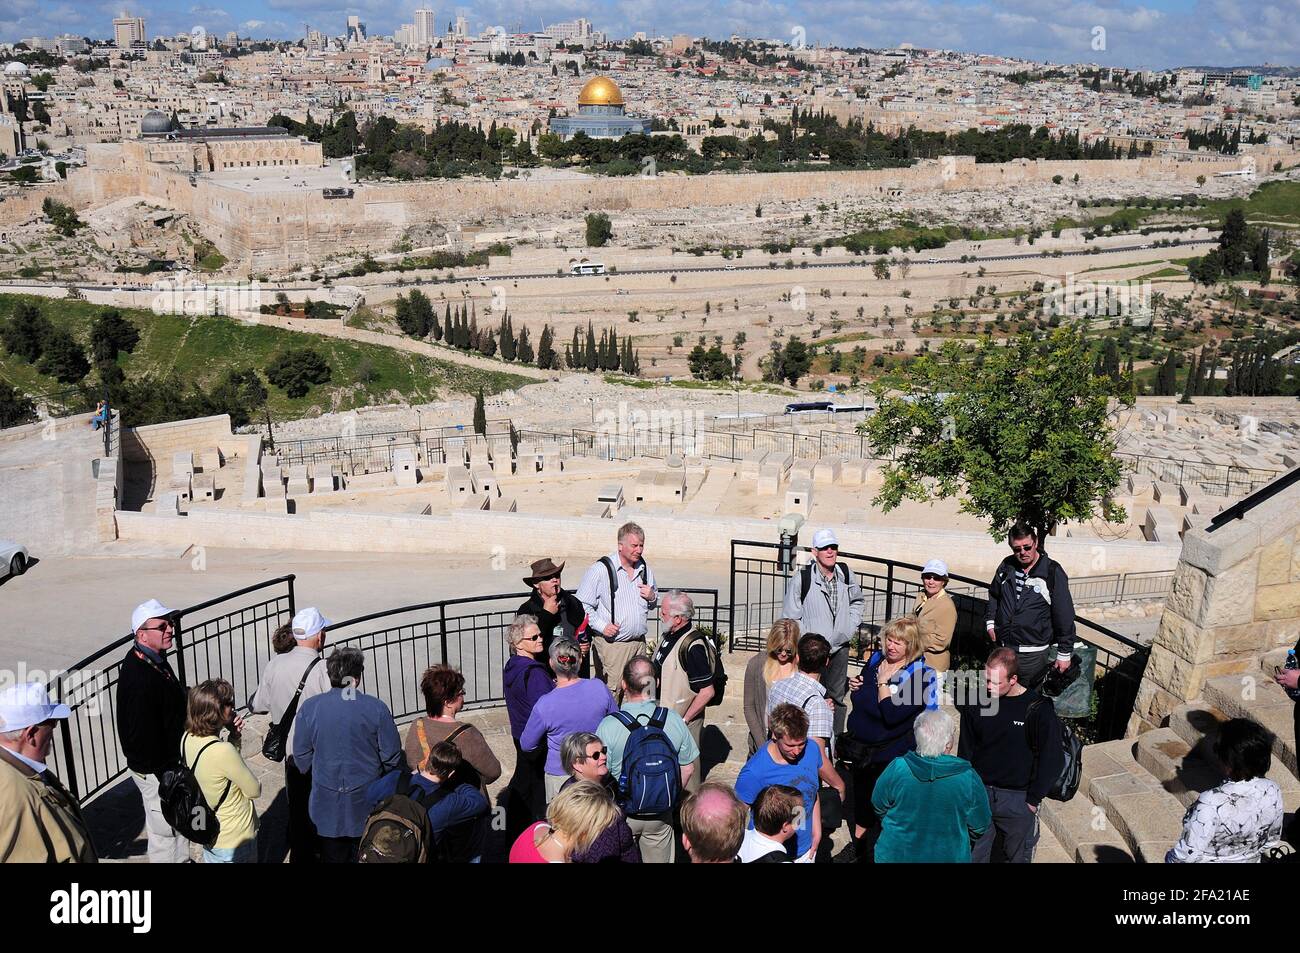 Vue sur Jérusalem depuis l'Olive Mountain. Touristes situés sur le Mont des oliviers. Une terrasse d'observation à Jérusalem. Israël. Banque D'Images